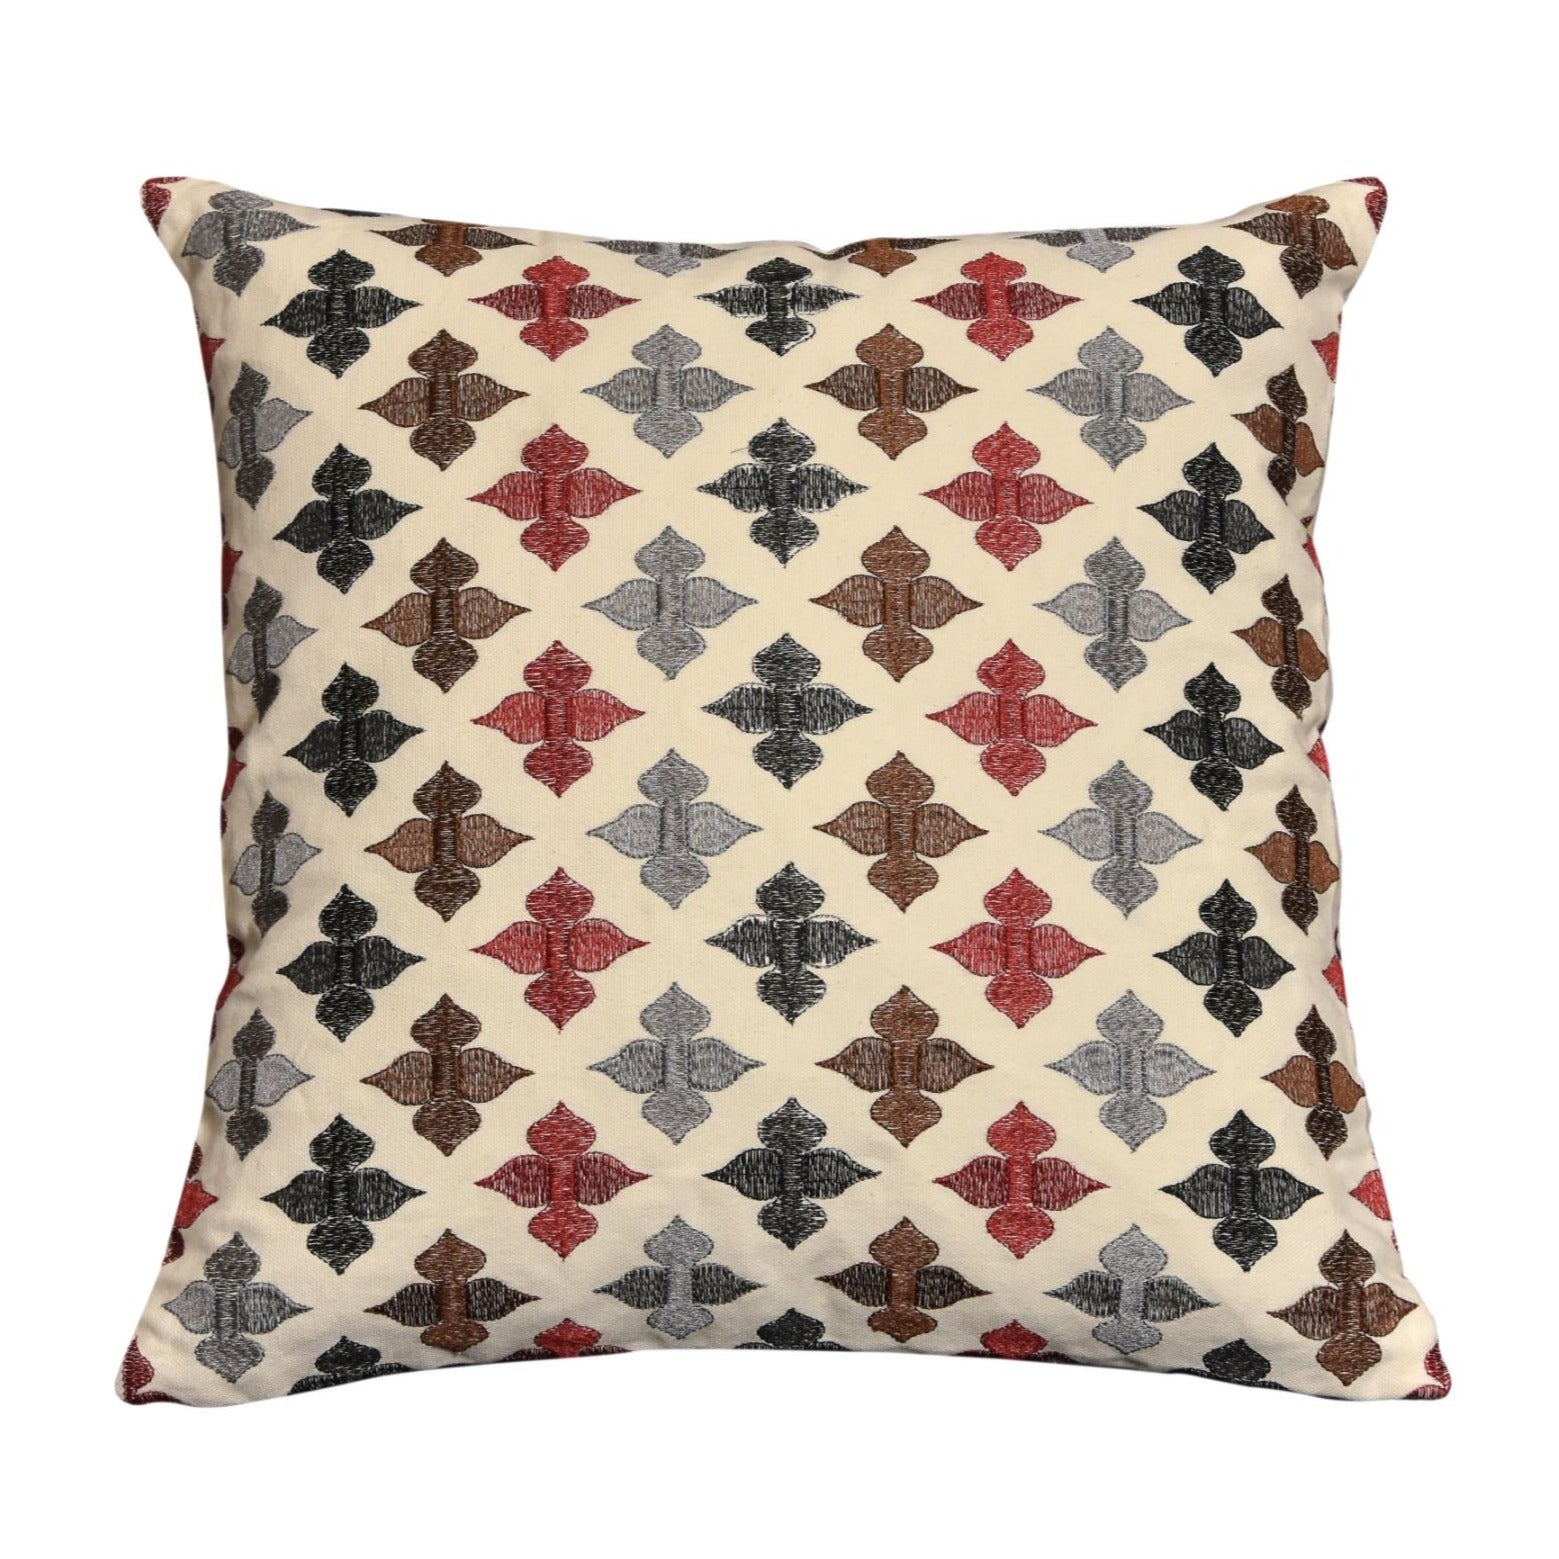 Nelofar's silk thread embroidered on canvas cushion covers